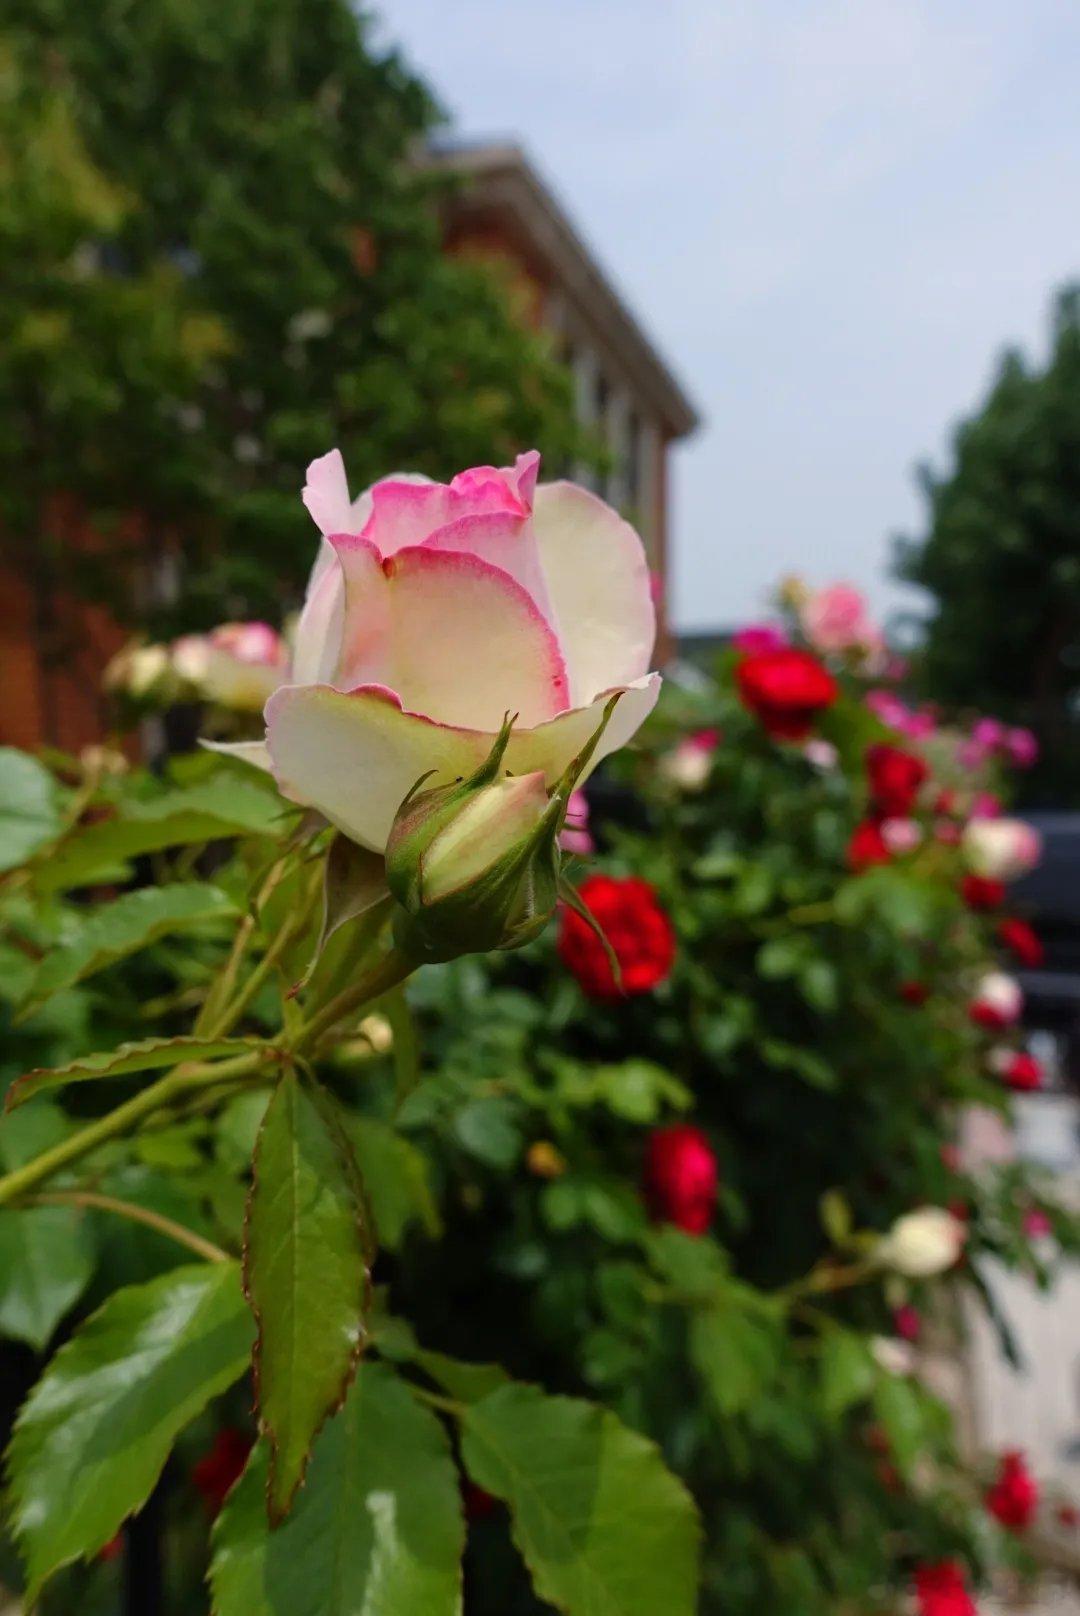 望海街的蔷薇花开啦大连的夏天，是蔷薇花极尽妖娆的季节，各种颜色、各种姿态的蔷薇花